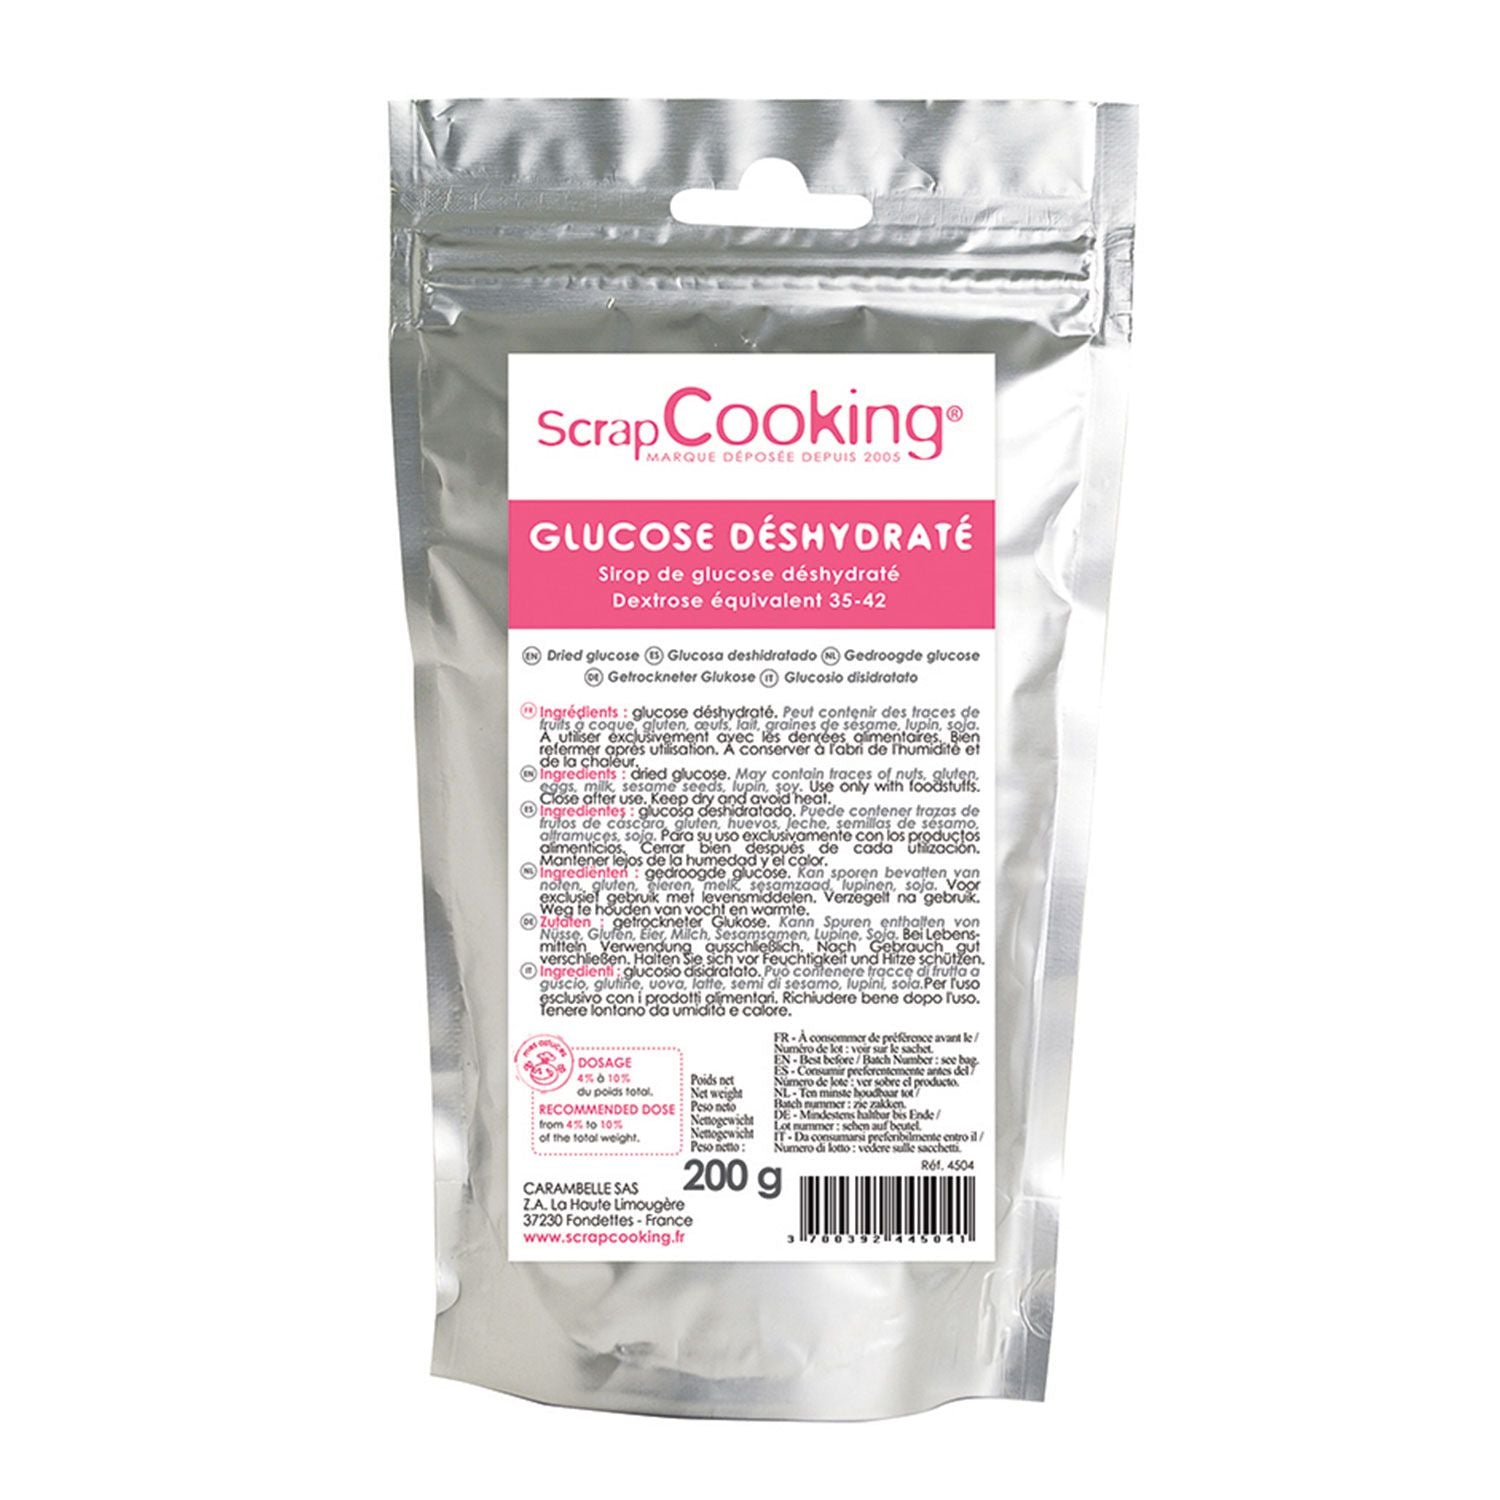 Scrapcooking - Sirop Glucose Déshydraté 200 g - Les Secrets du Chef